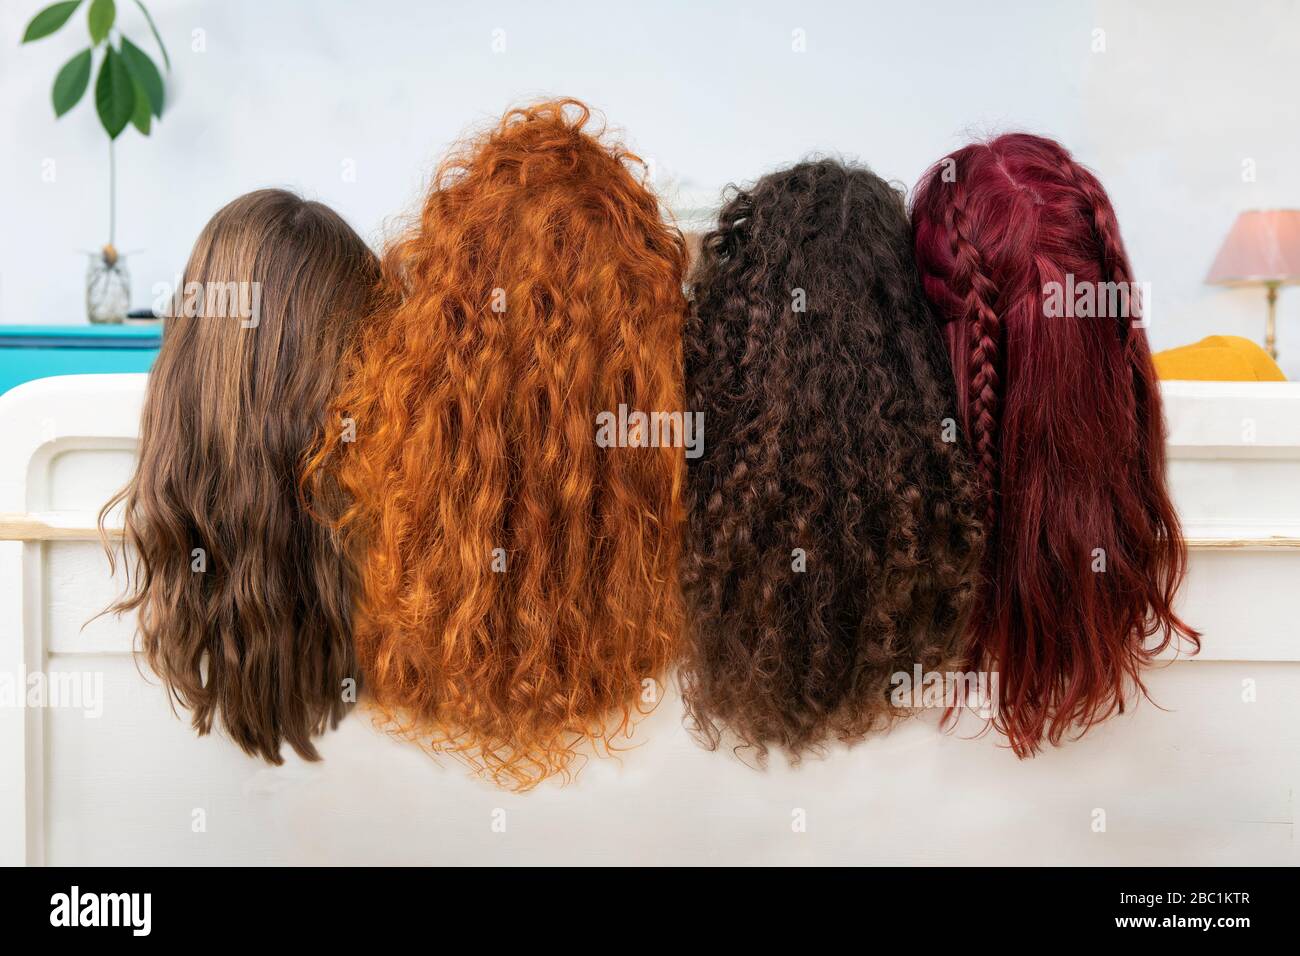 Rückansicht von vier Frauen mit langen braunen und roten Haaren Stockfoto